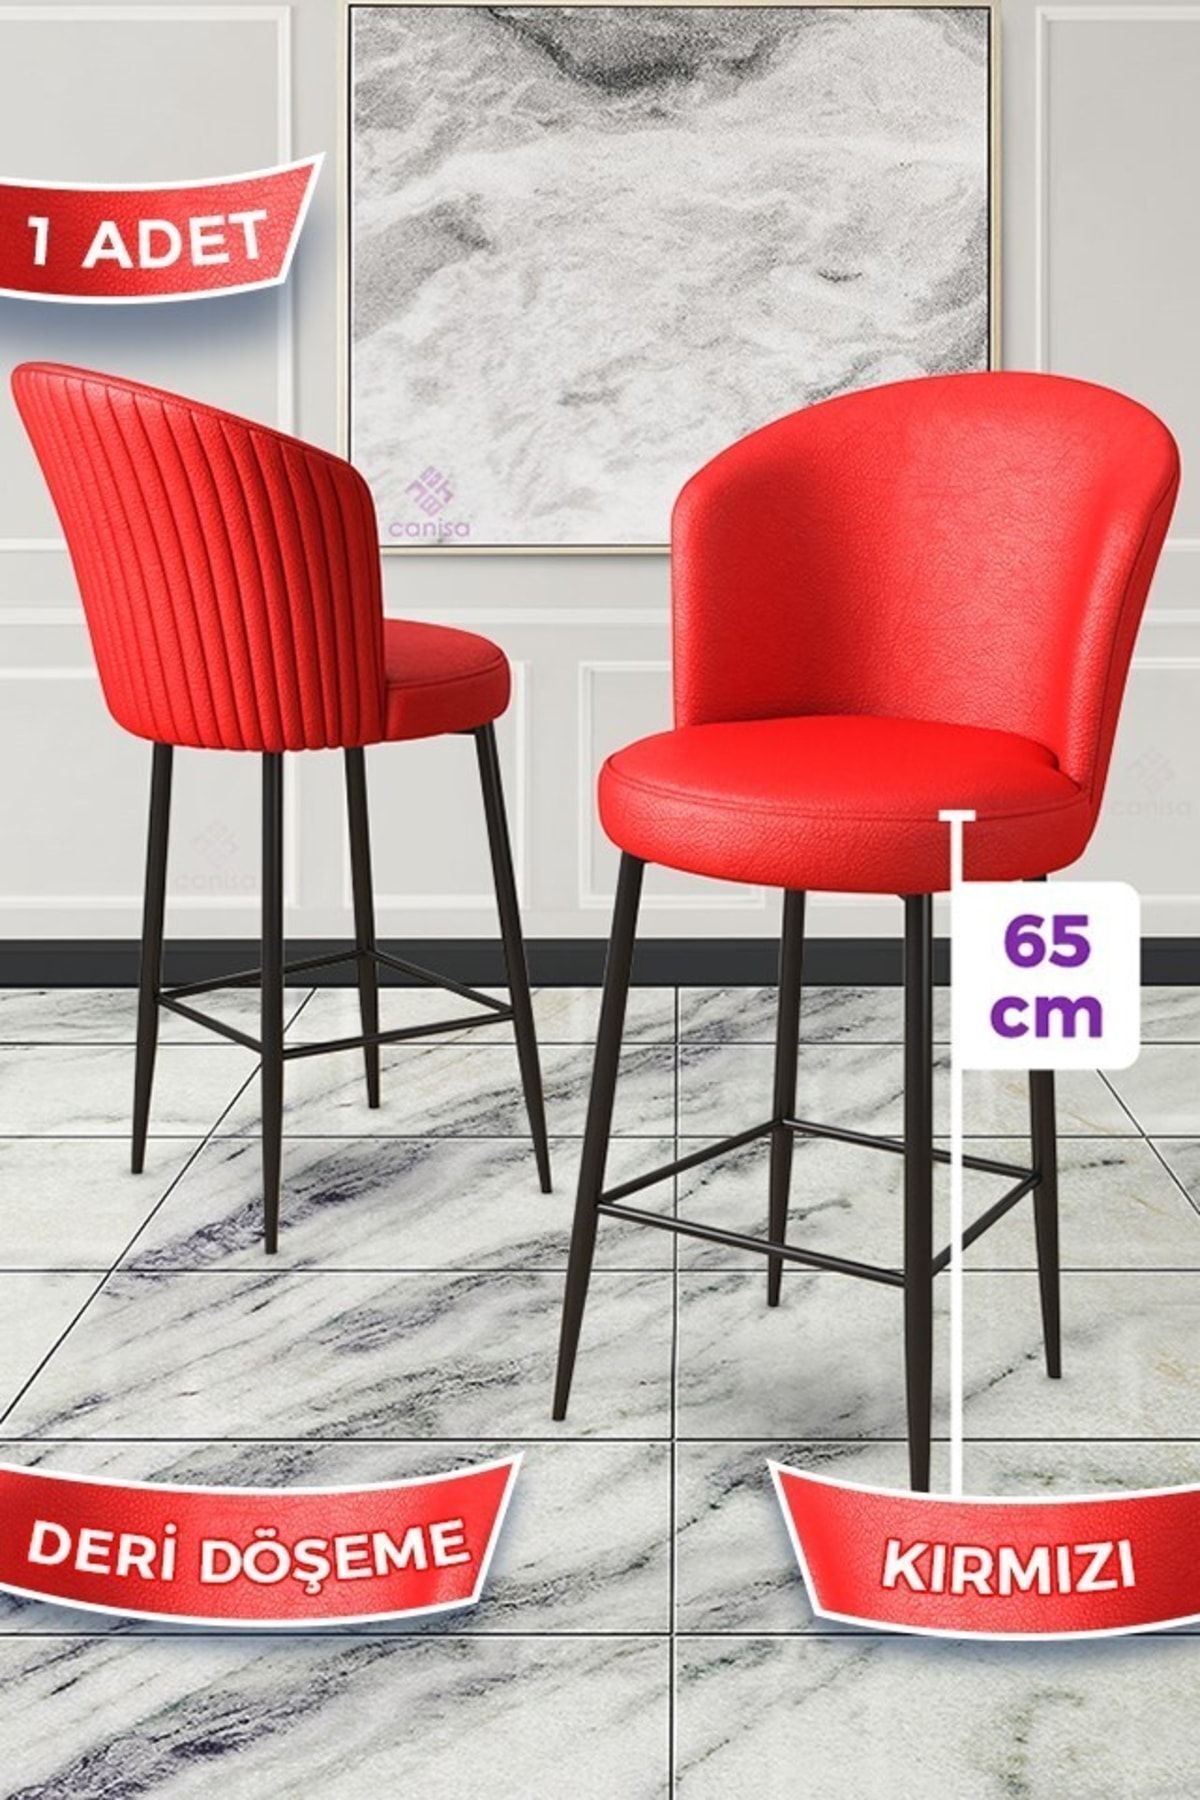 Canisa Rika Serisi 1 Adet Kırmızı 65 Cm Deri Bar Sandalyesi Siyah Metal Ayaklı Ada Mutfak Bar Sandalyesi